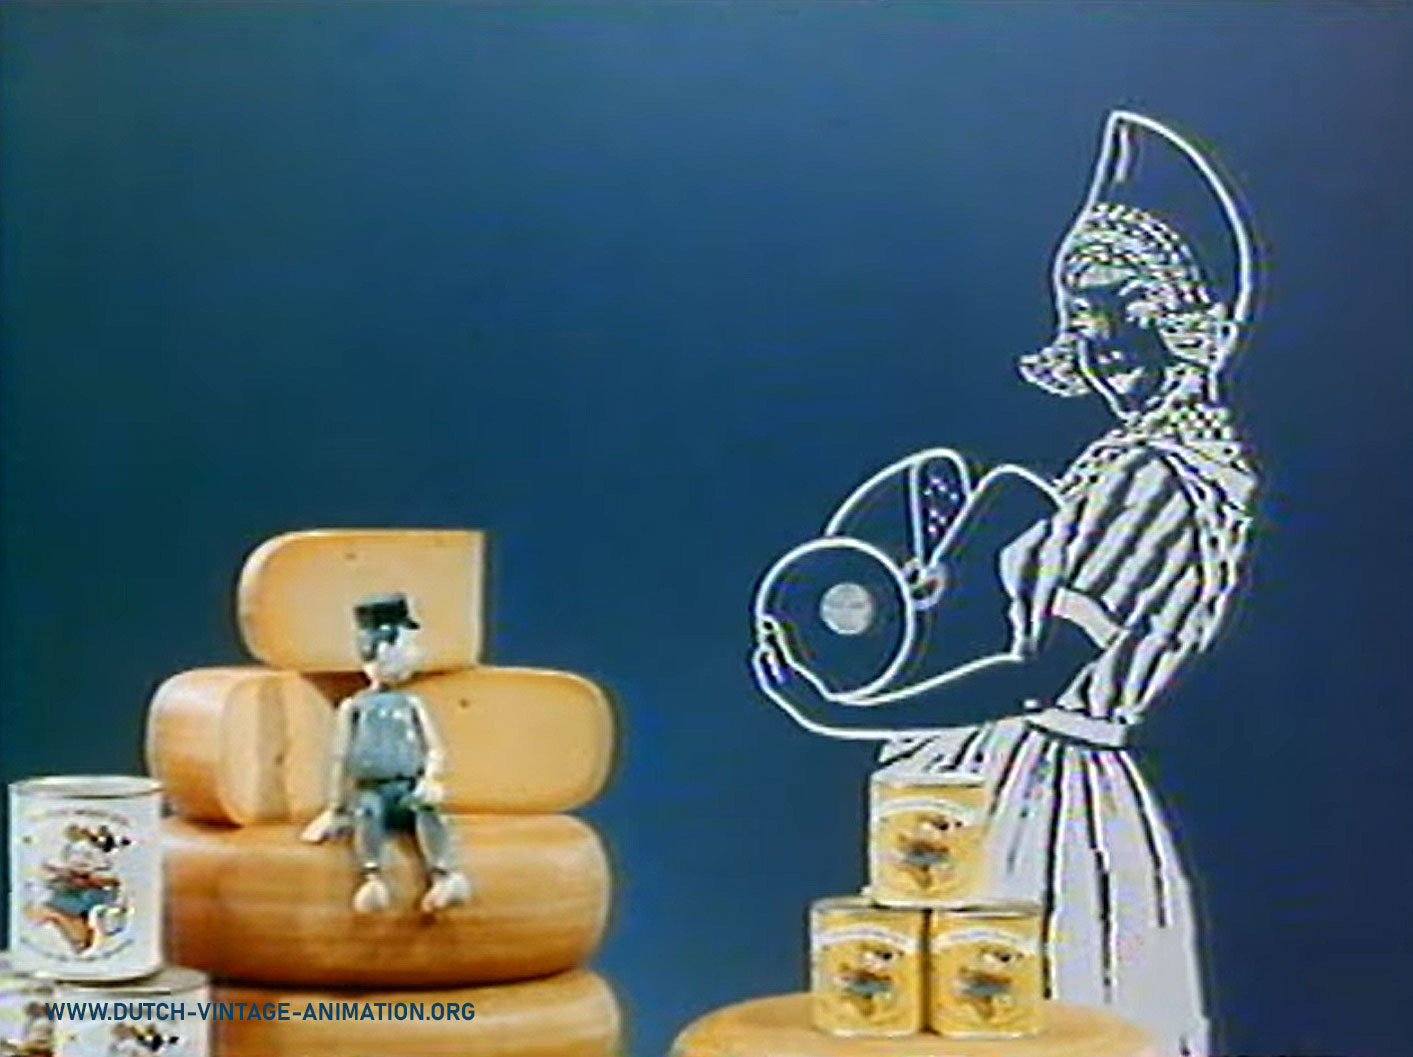 Delfts Blauw (1966) - Dutchy is zichtbaar op de etiketten. Op de achtergrond ontstaat beeltenis van Frau Antje.